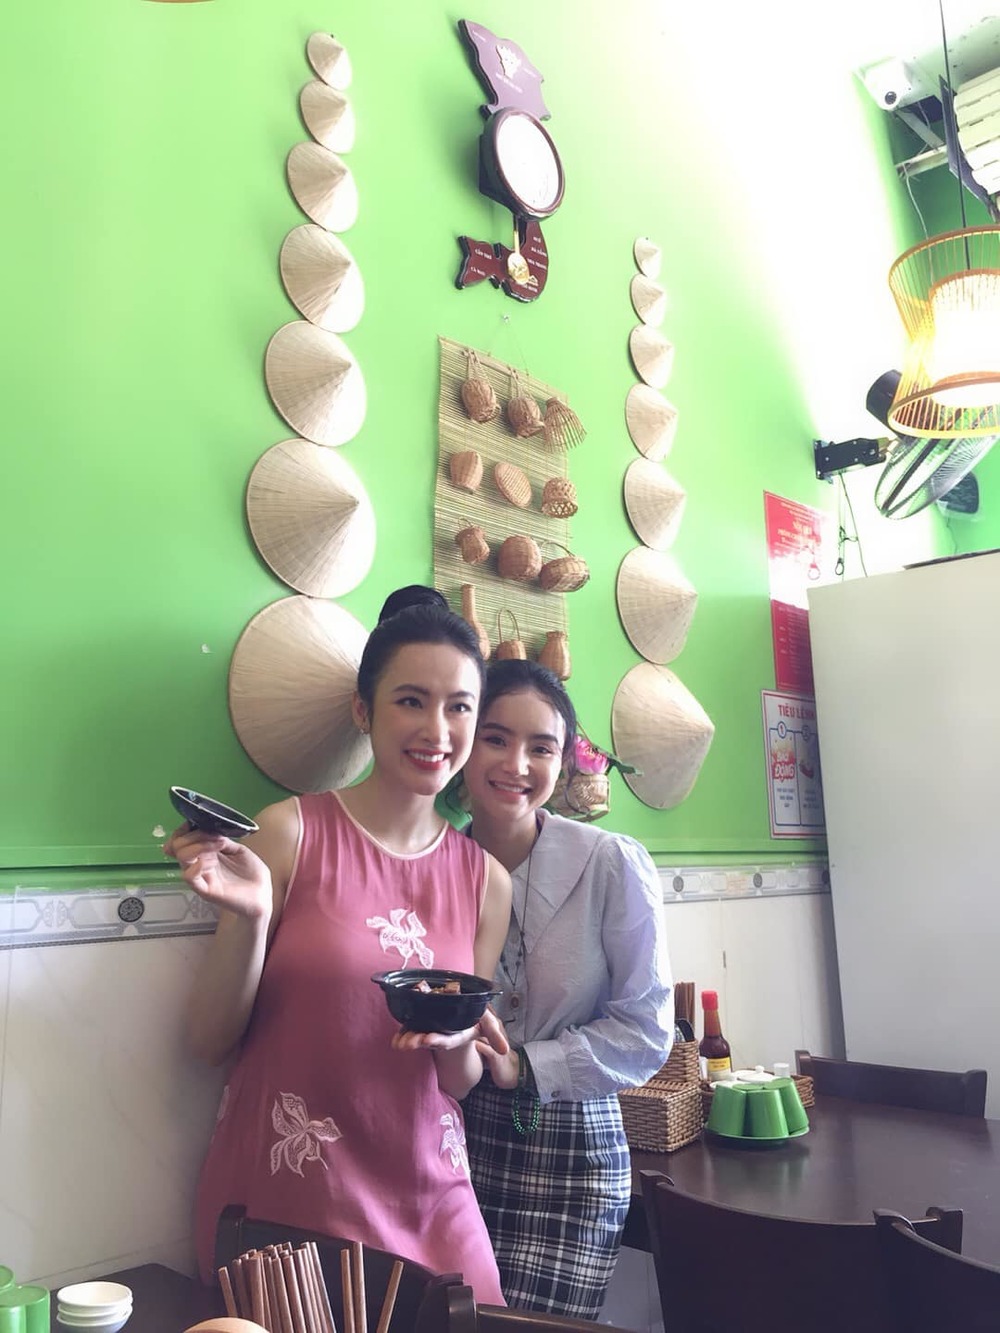  
Phương Trang giúp chị gái quản lý tiệm chay. (Ảnh: FBNV)